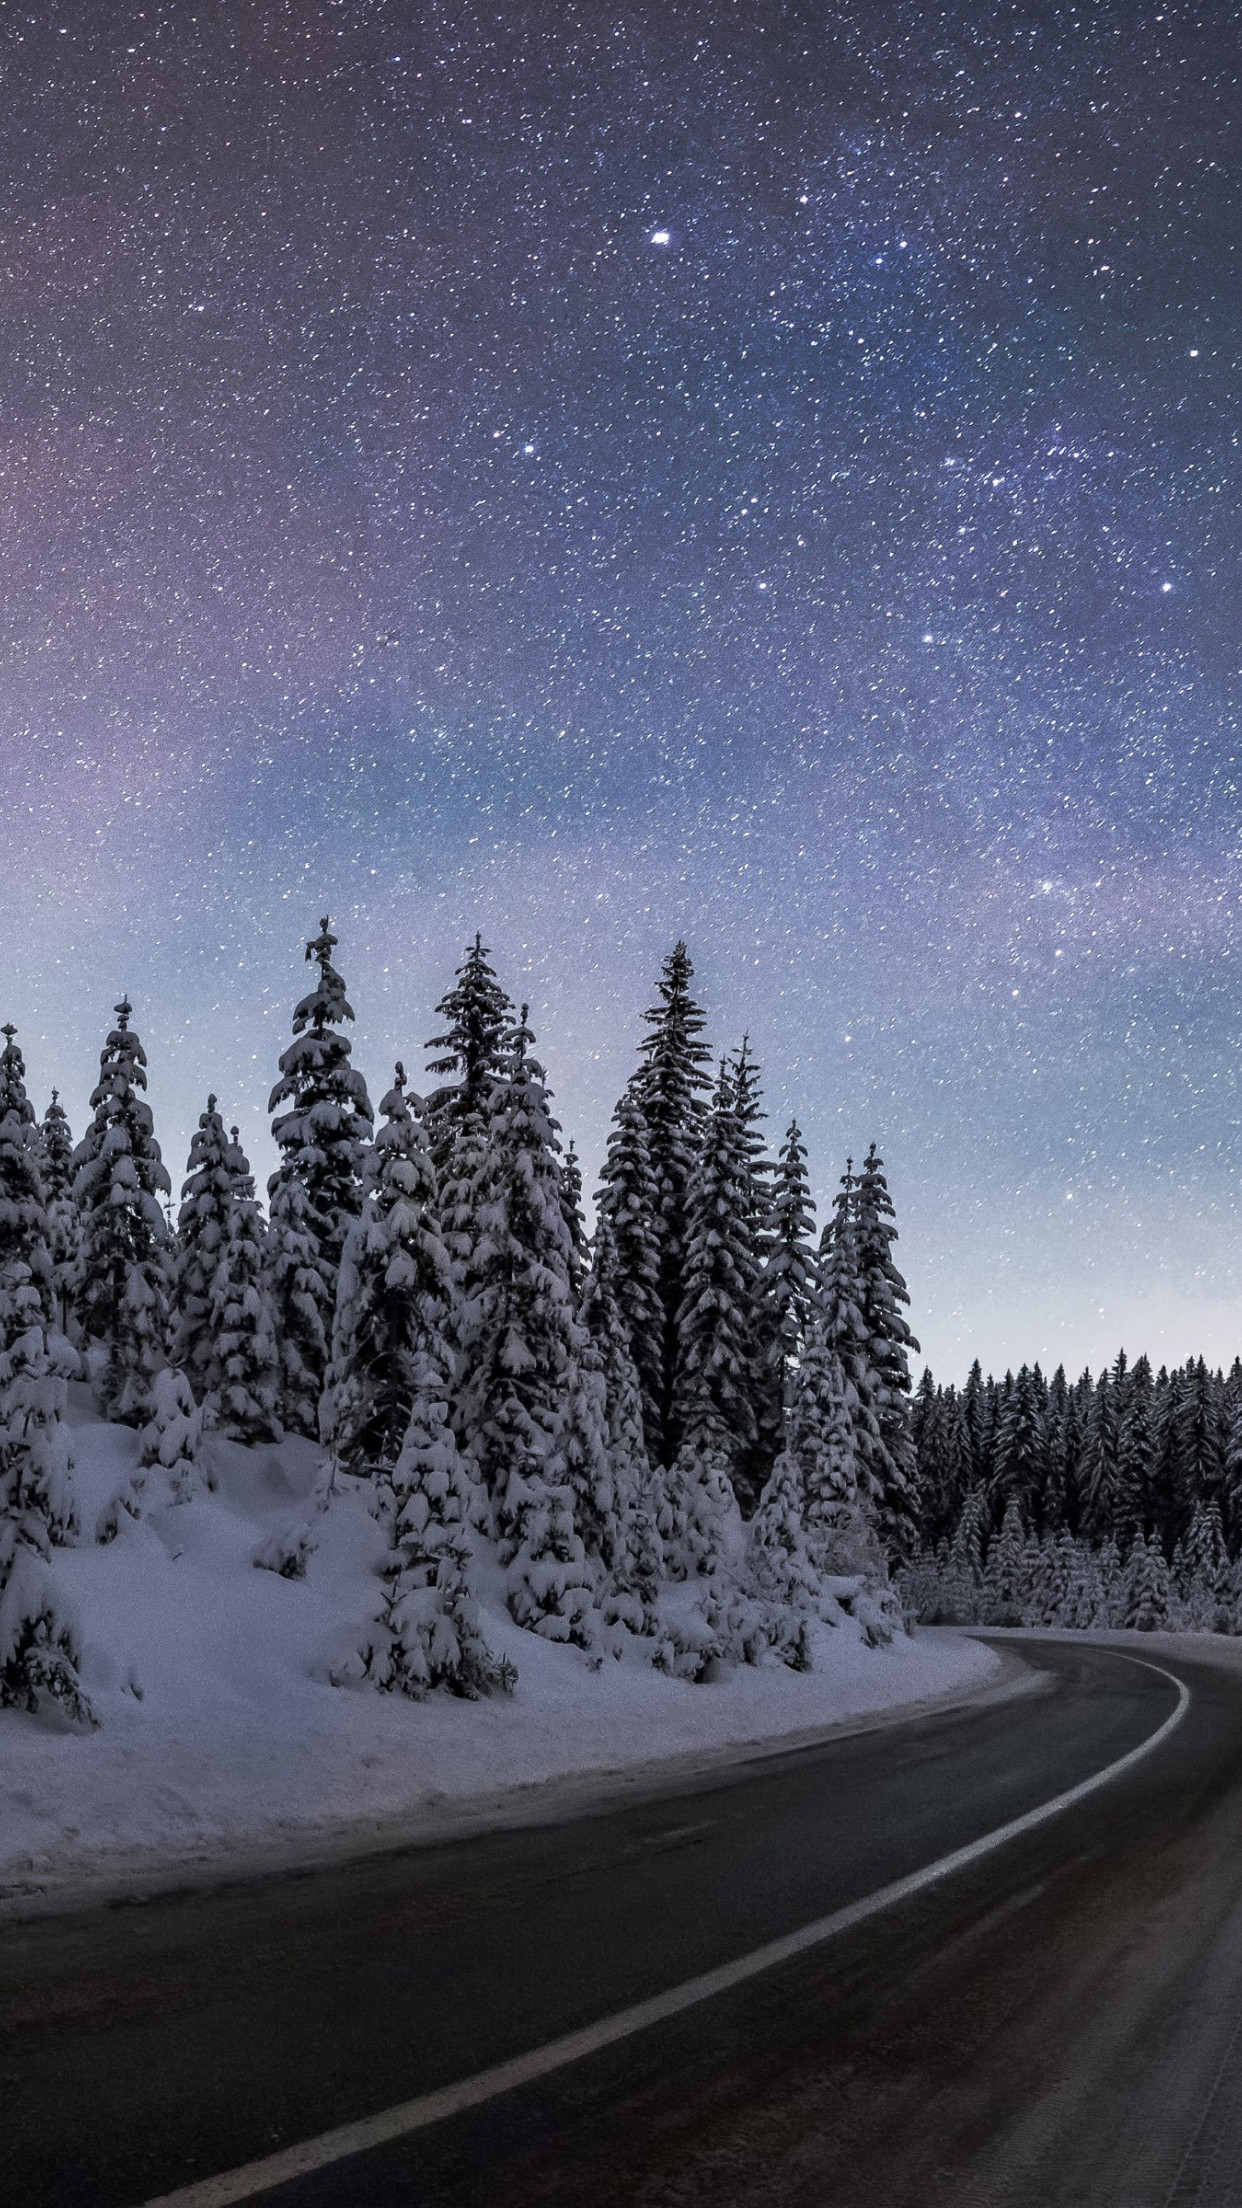 Download wallpaper: Winter night at Pokljuka forest 1242x2208